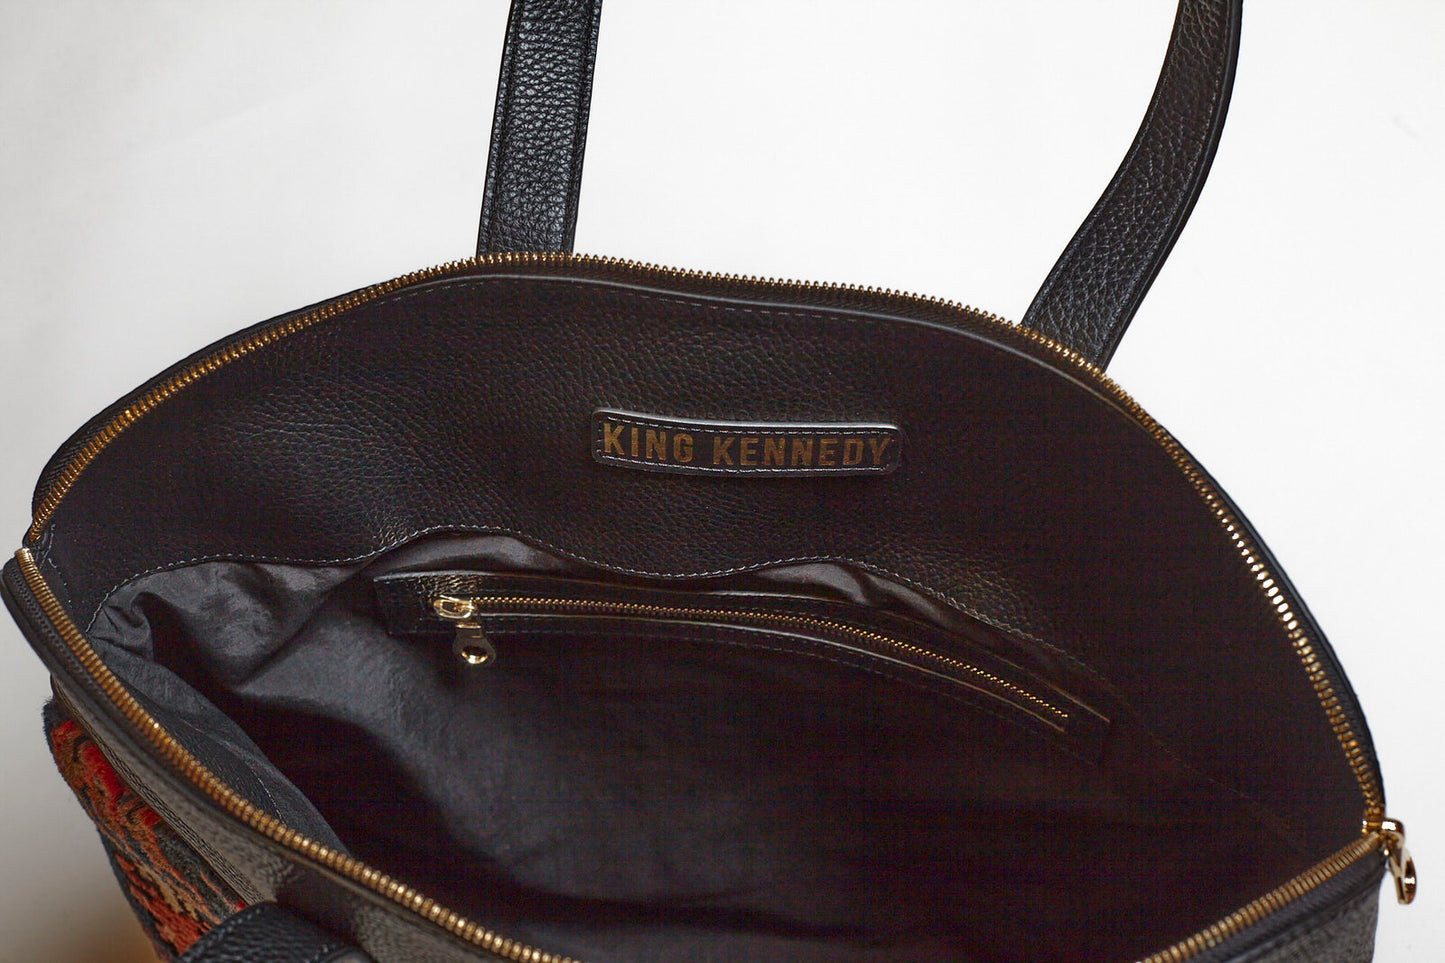 King Kennedy Despina Bag - 00019